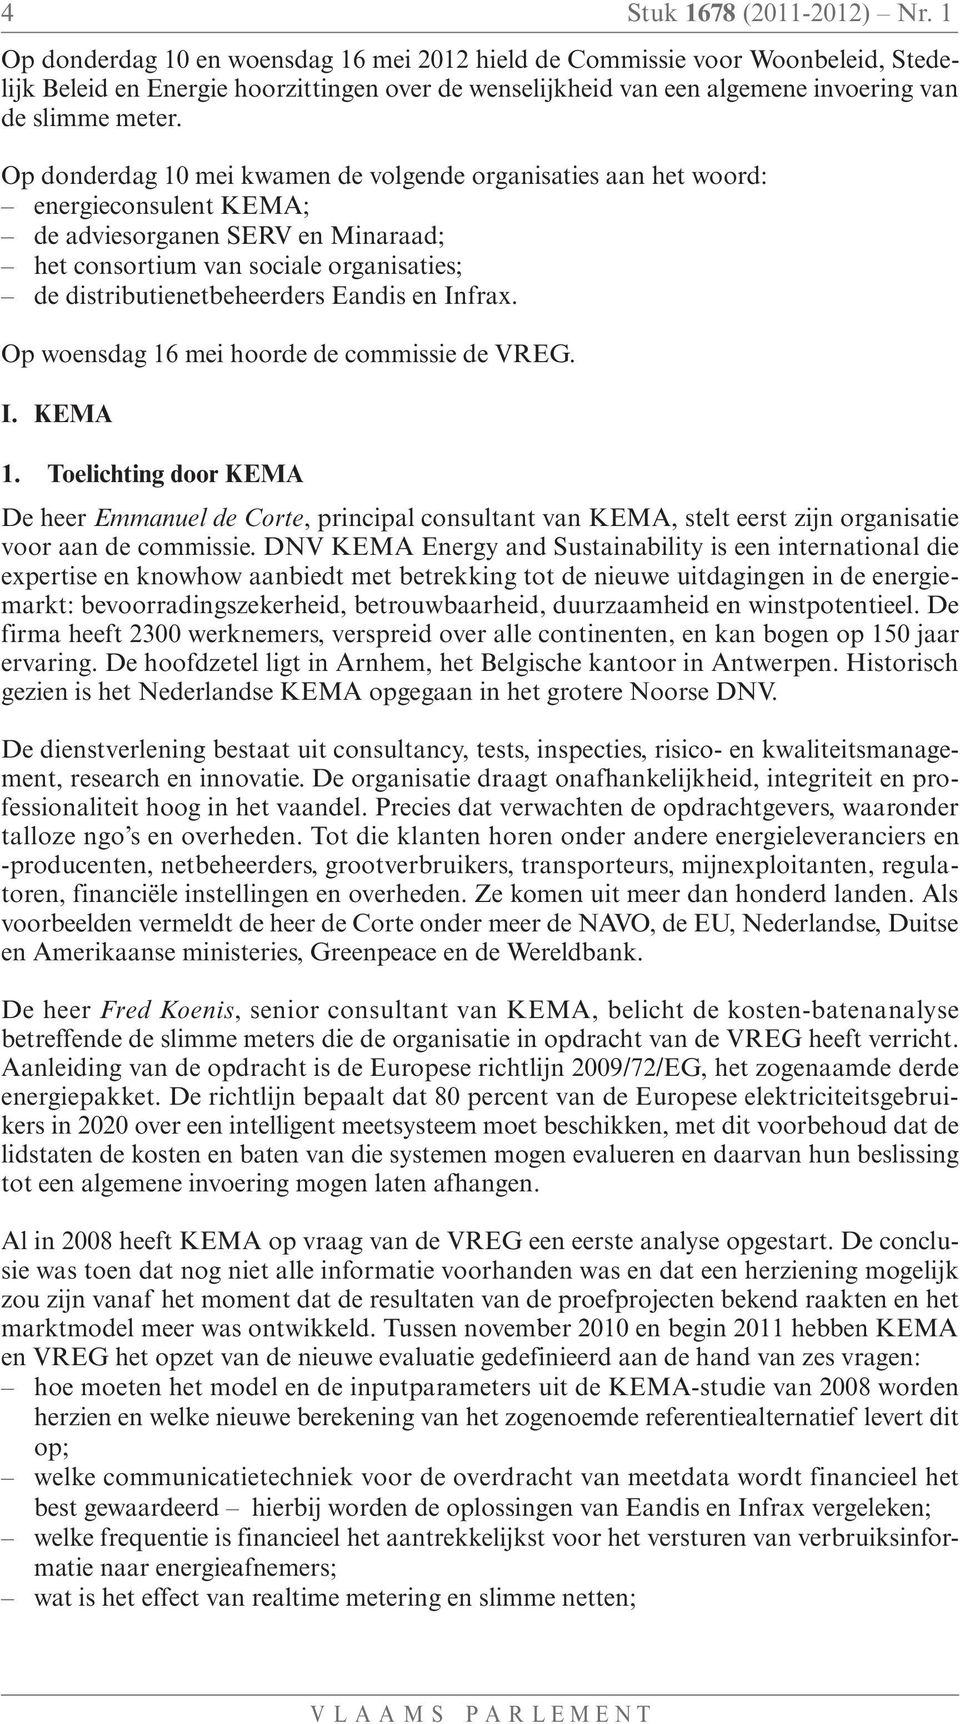 Op donderdag 10 mei kwamen de volgende organisaties aan het woord: energieconsulent KEMA; de adviesorganen SERV en Minaraad; het consortium van sociale organisaties; de distributienetbeheerders